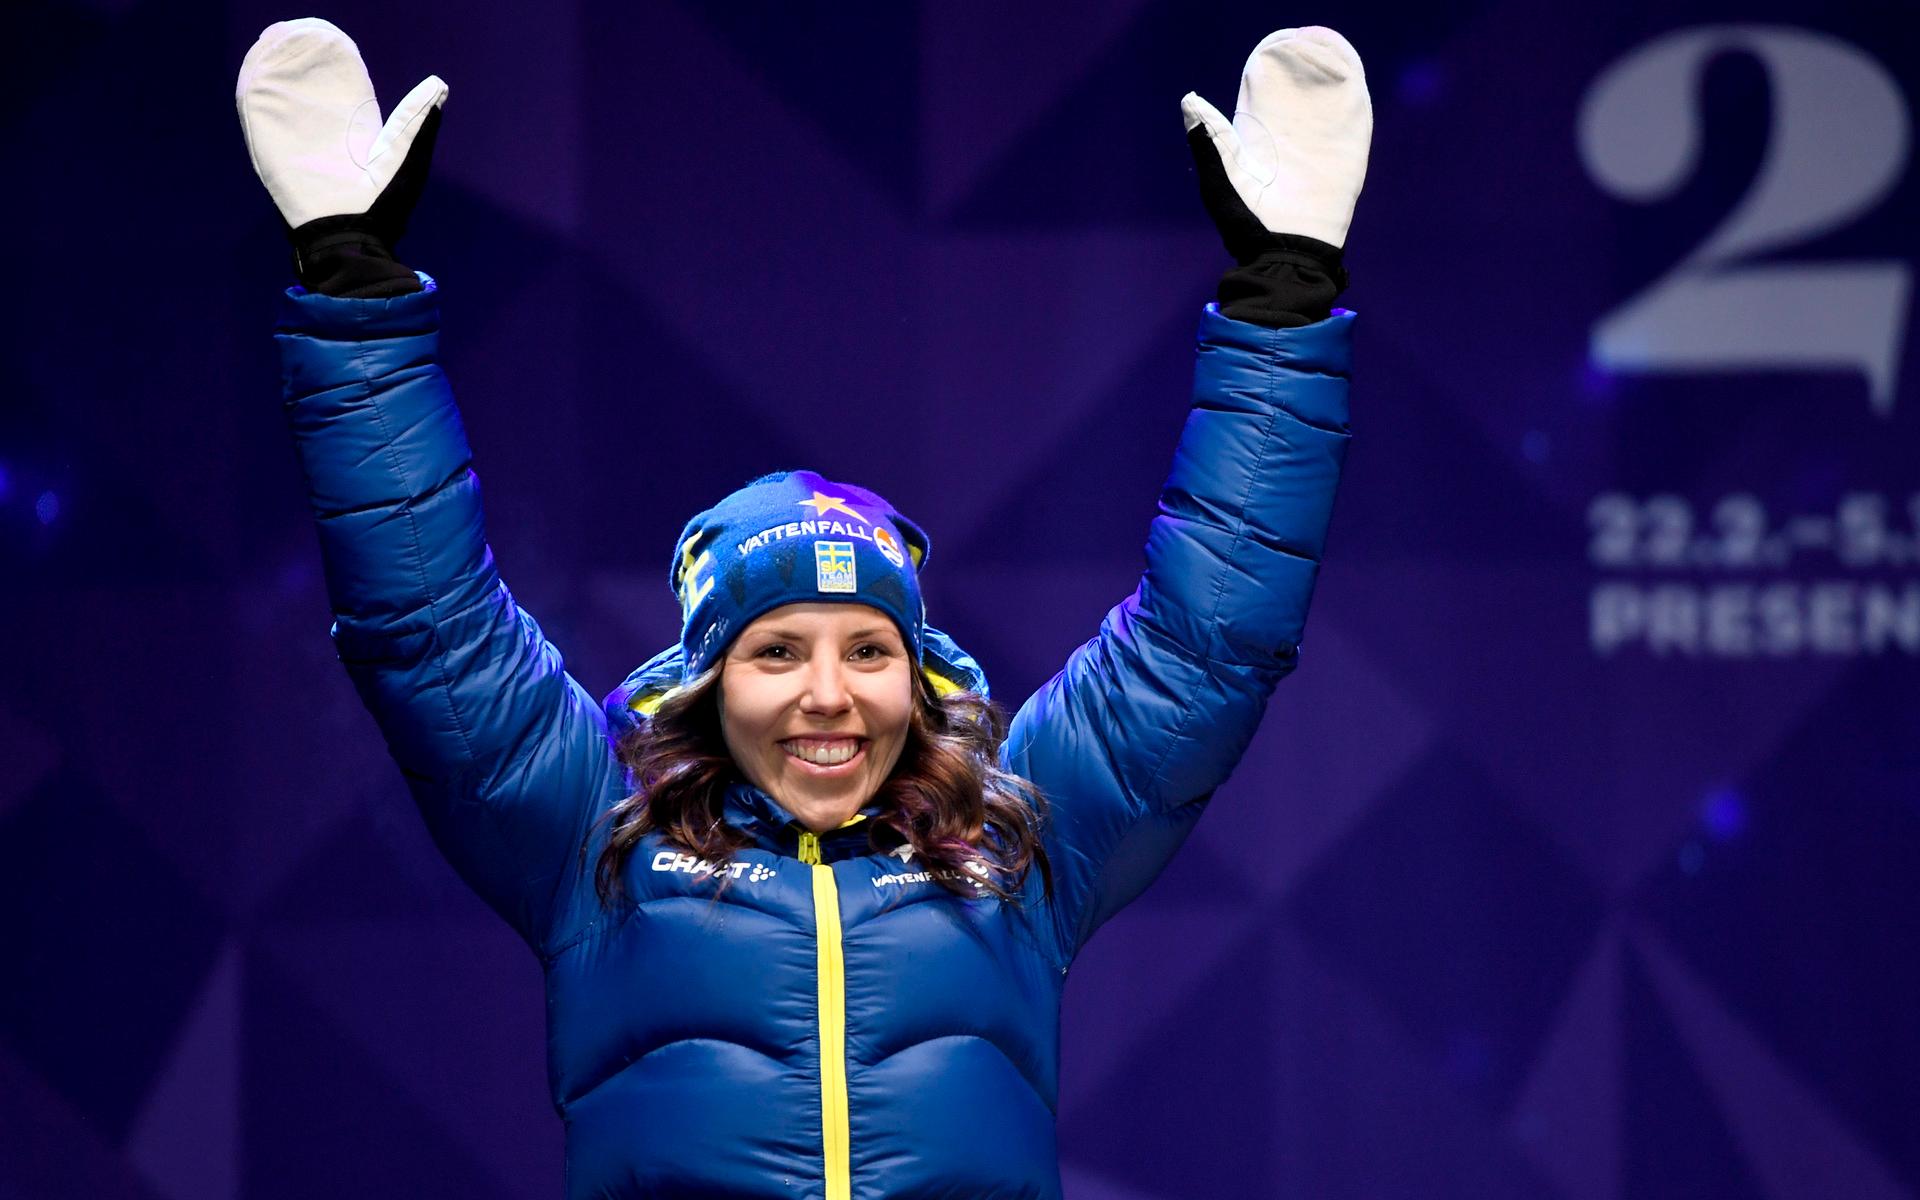 Charlotte Kalla meddelade på tisdagen att hon 34 år gammal väljer att avsluta sin skidkarriär. Under årens lopp har det regnat in guld-, silver och bronsmedaljer både i internationella och nationella tävlingar. 